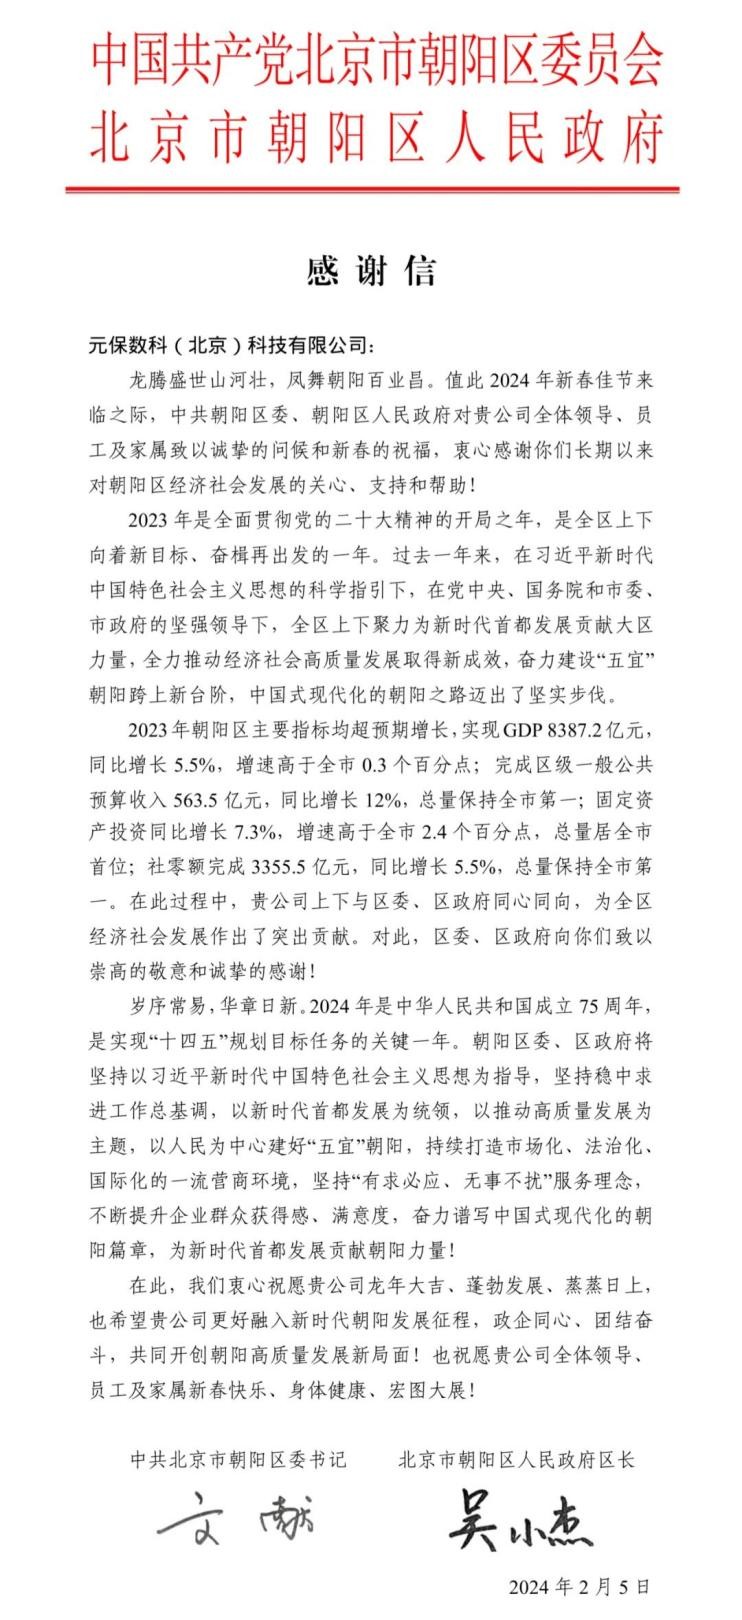 【暖心瞬间】元保集团收到朝阳区委、区政府新春感谢信